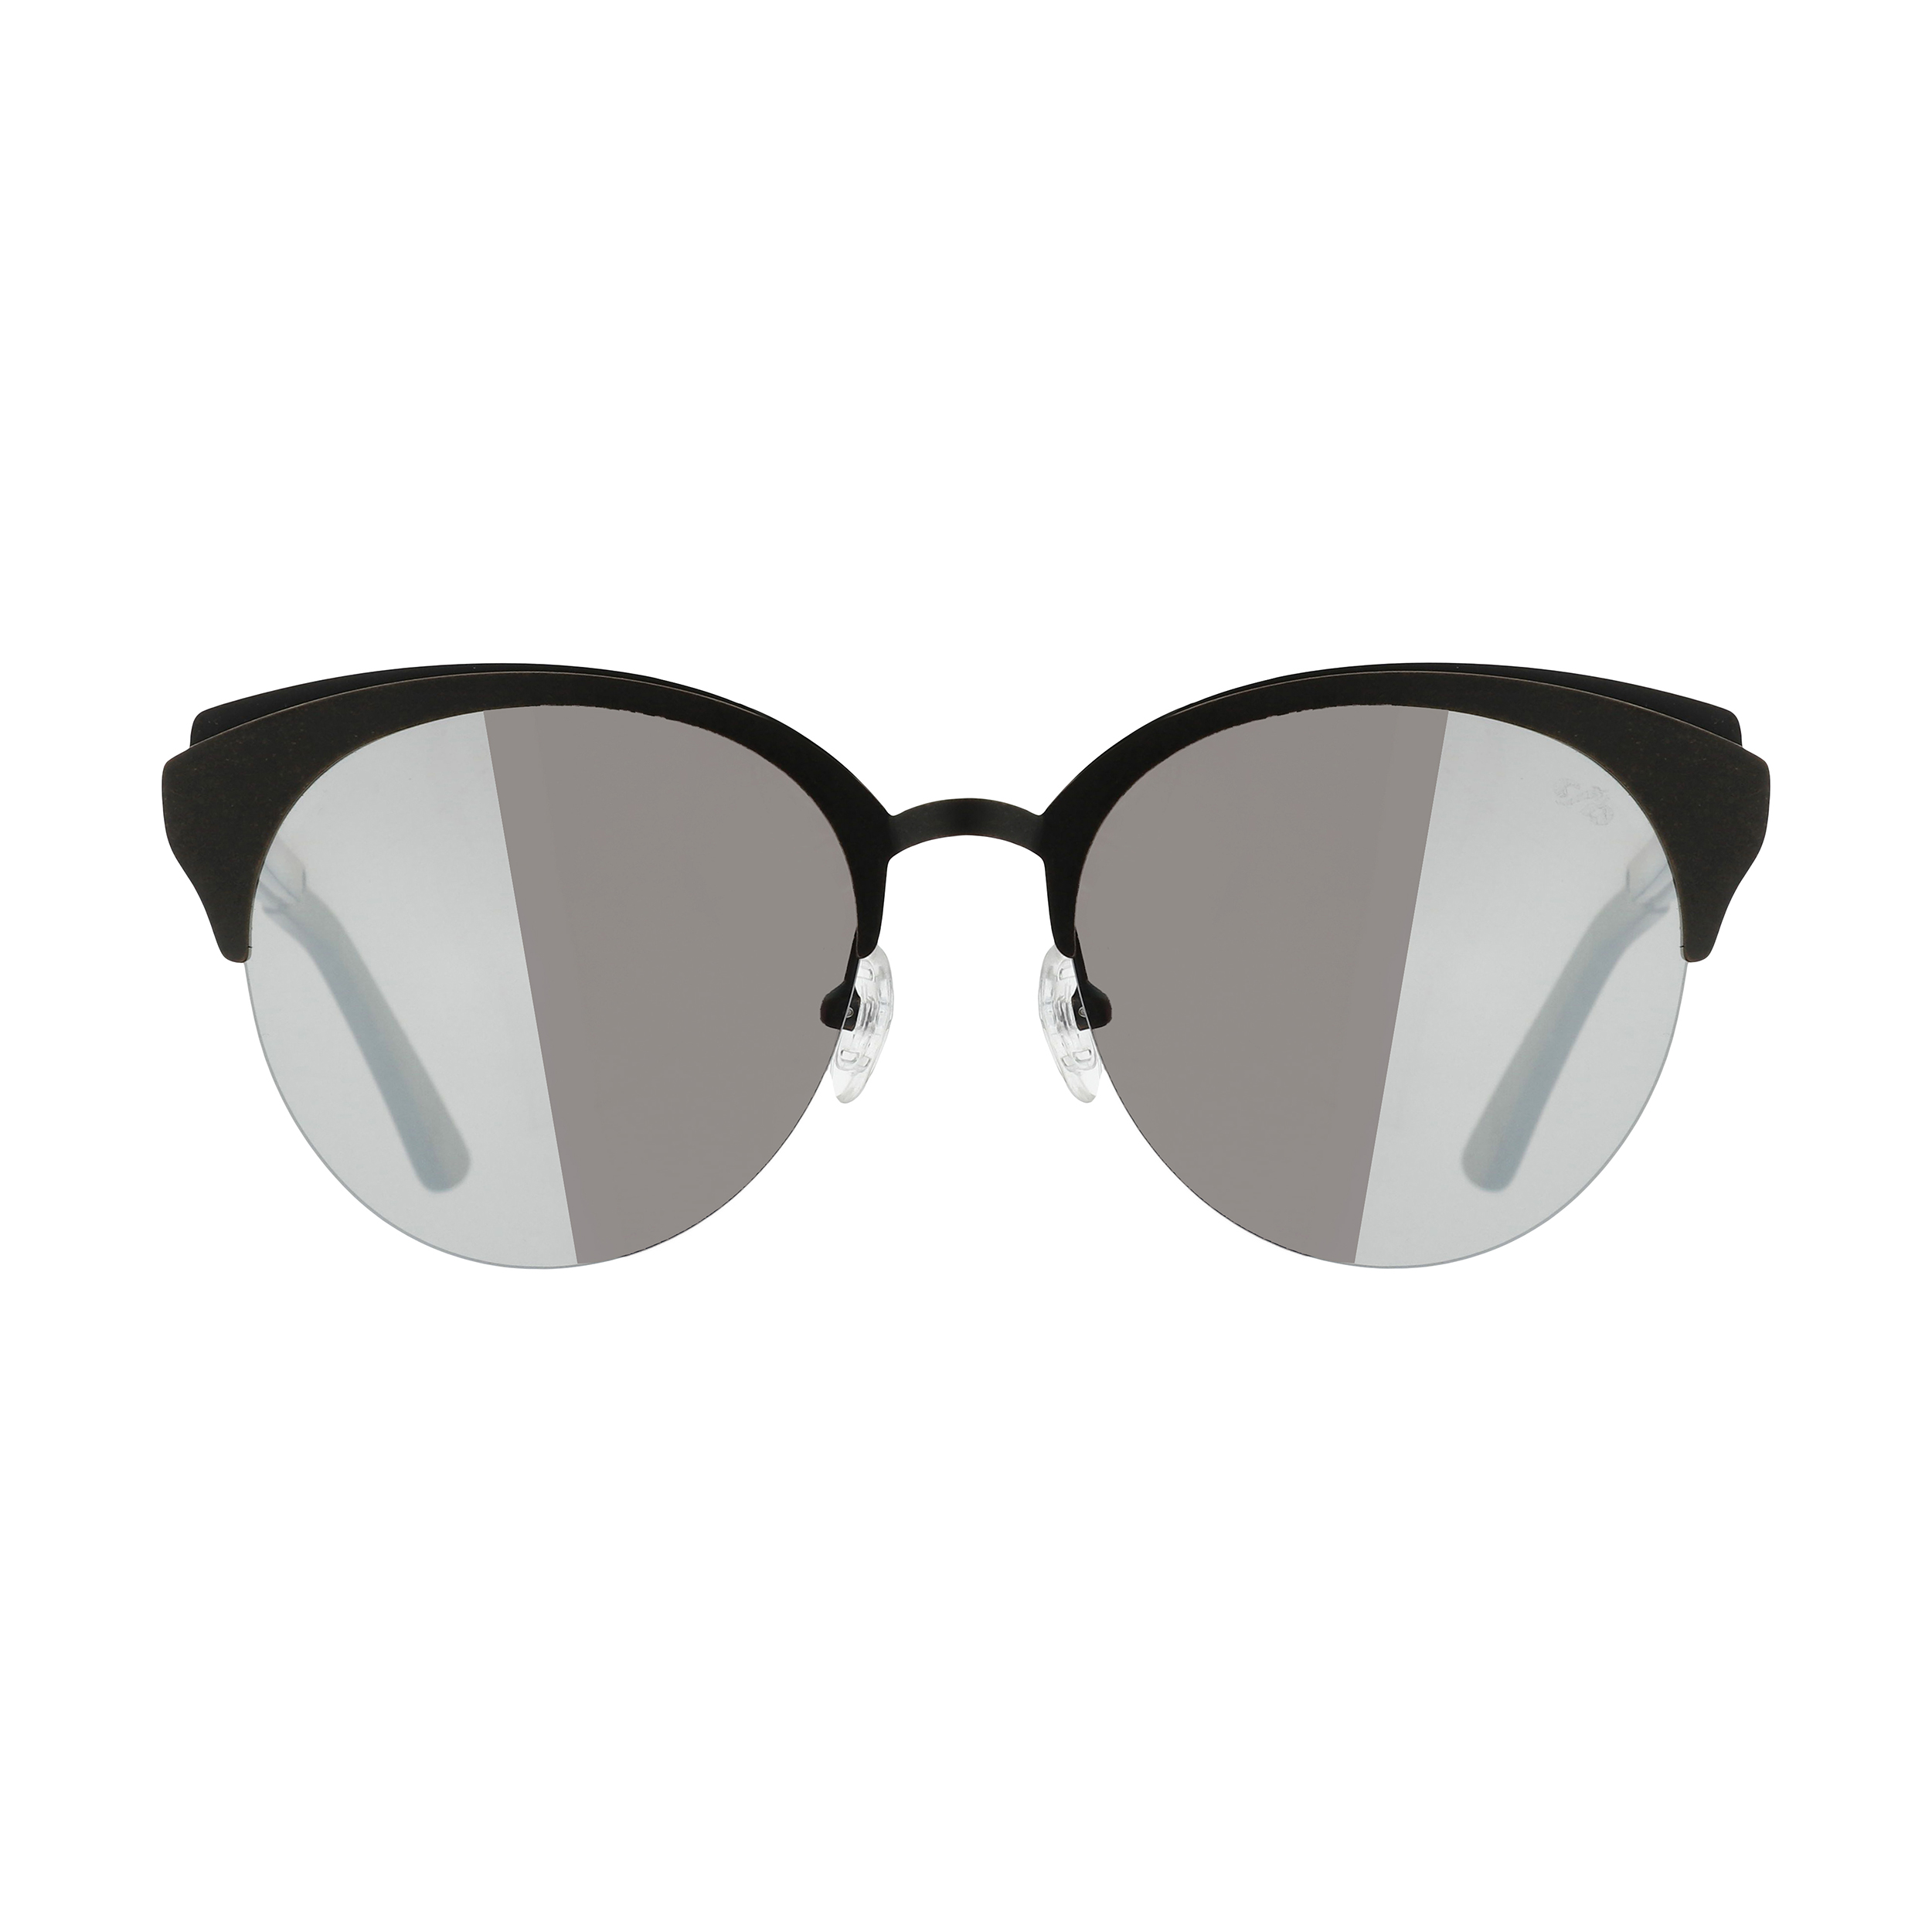 نقد و بررسی عینک آفتابی زنانه چیلی بینز مدل 2555 dbr توسط خریداران